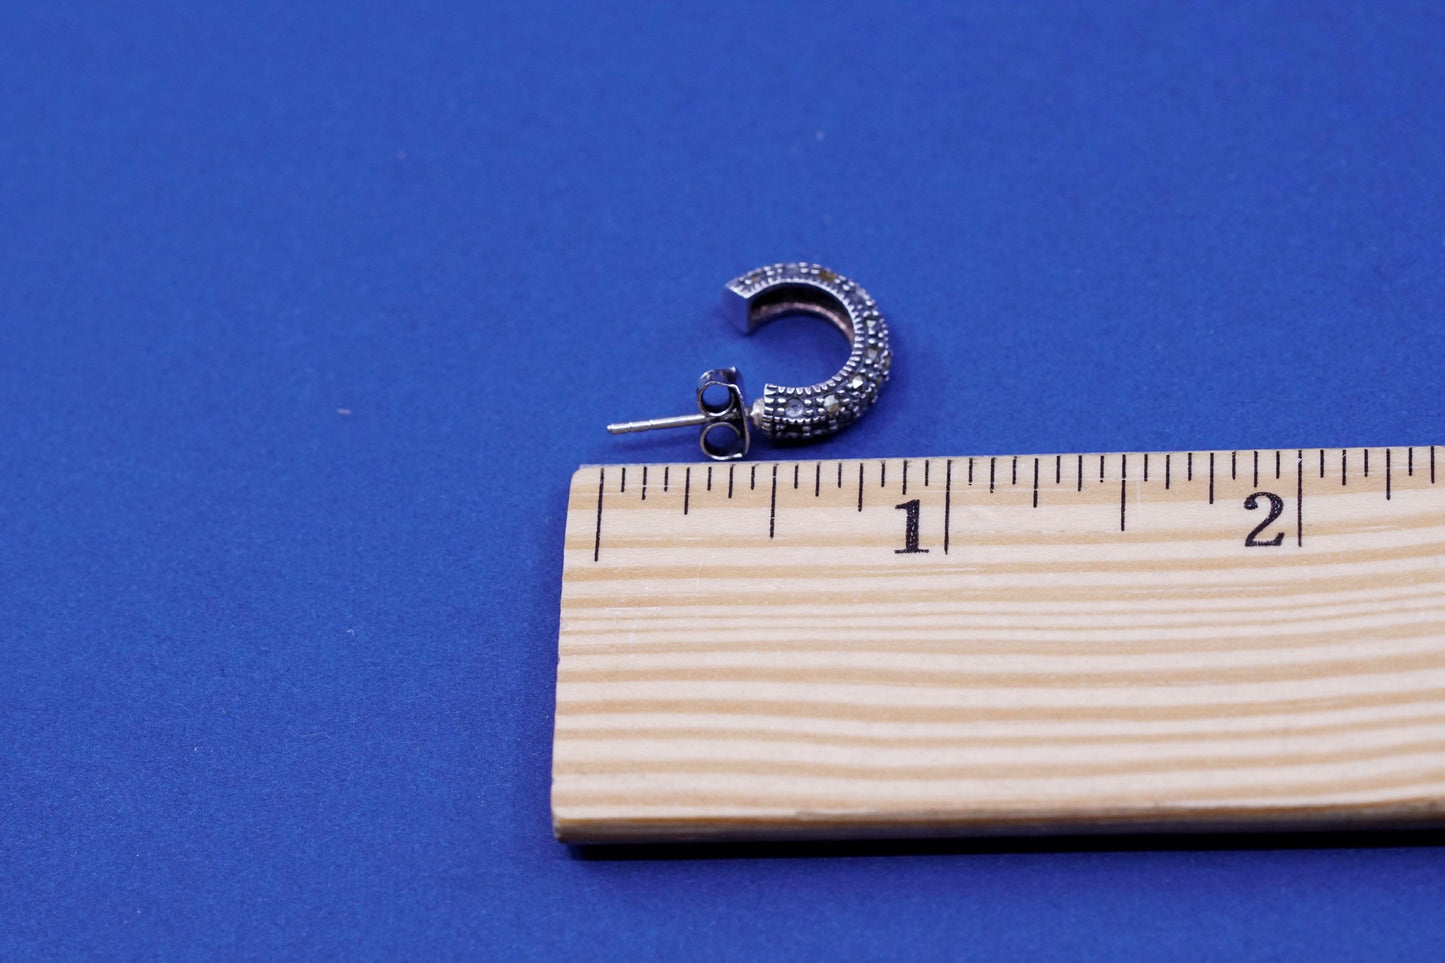 0.5”, Sterling silver handmade earrings, 925 hoops w/ marcasite details, huggie